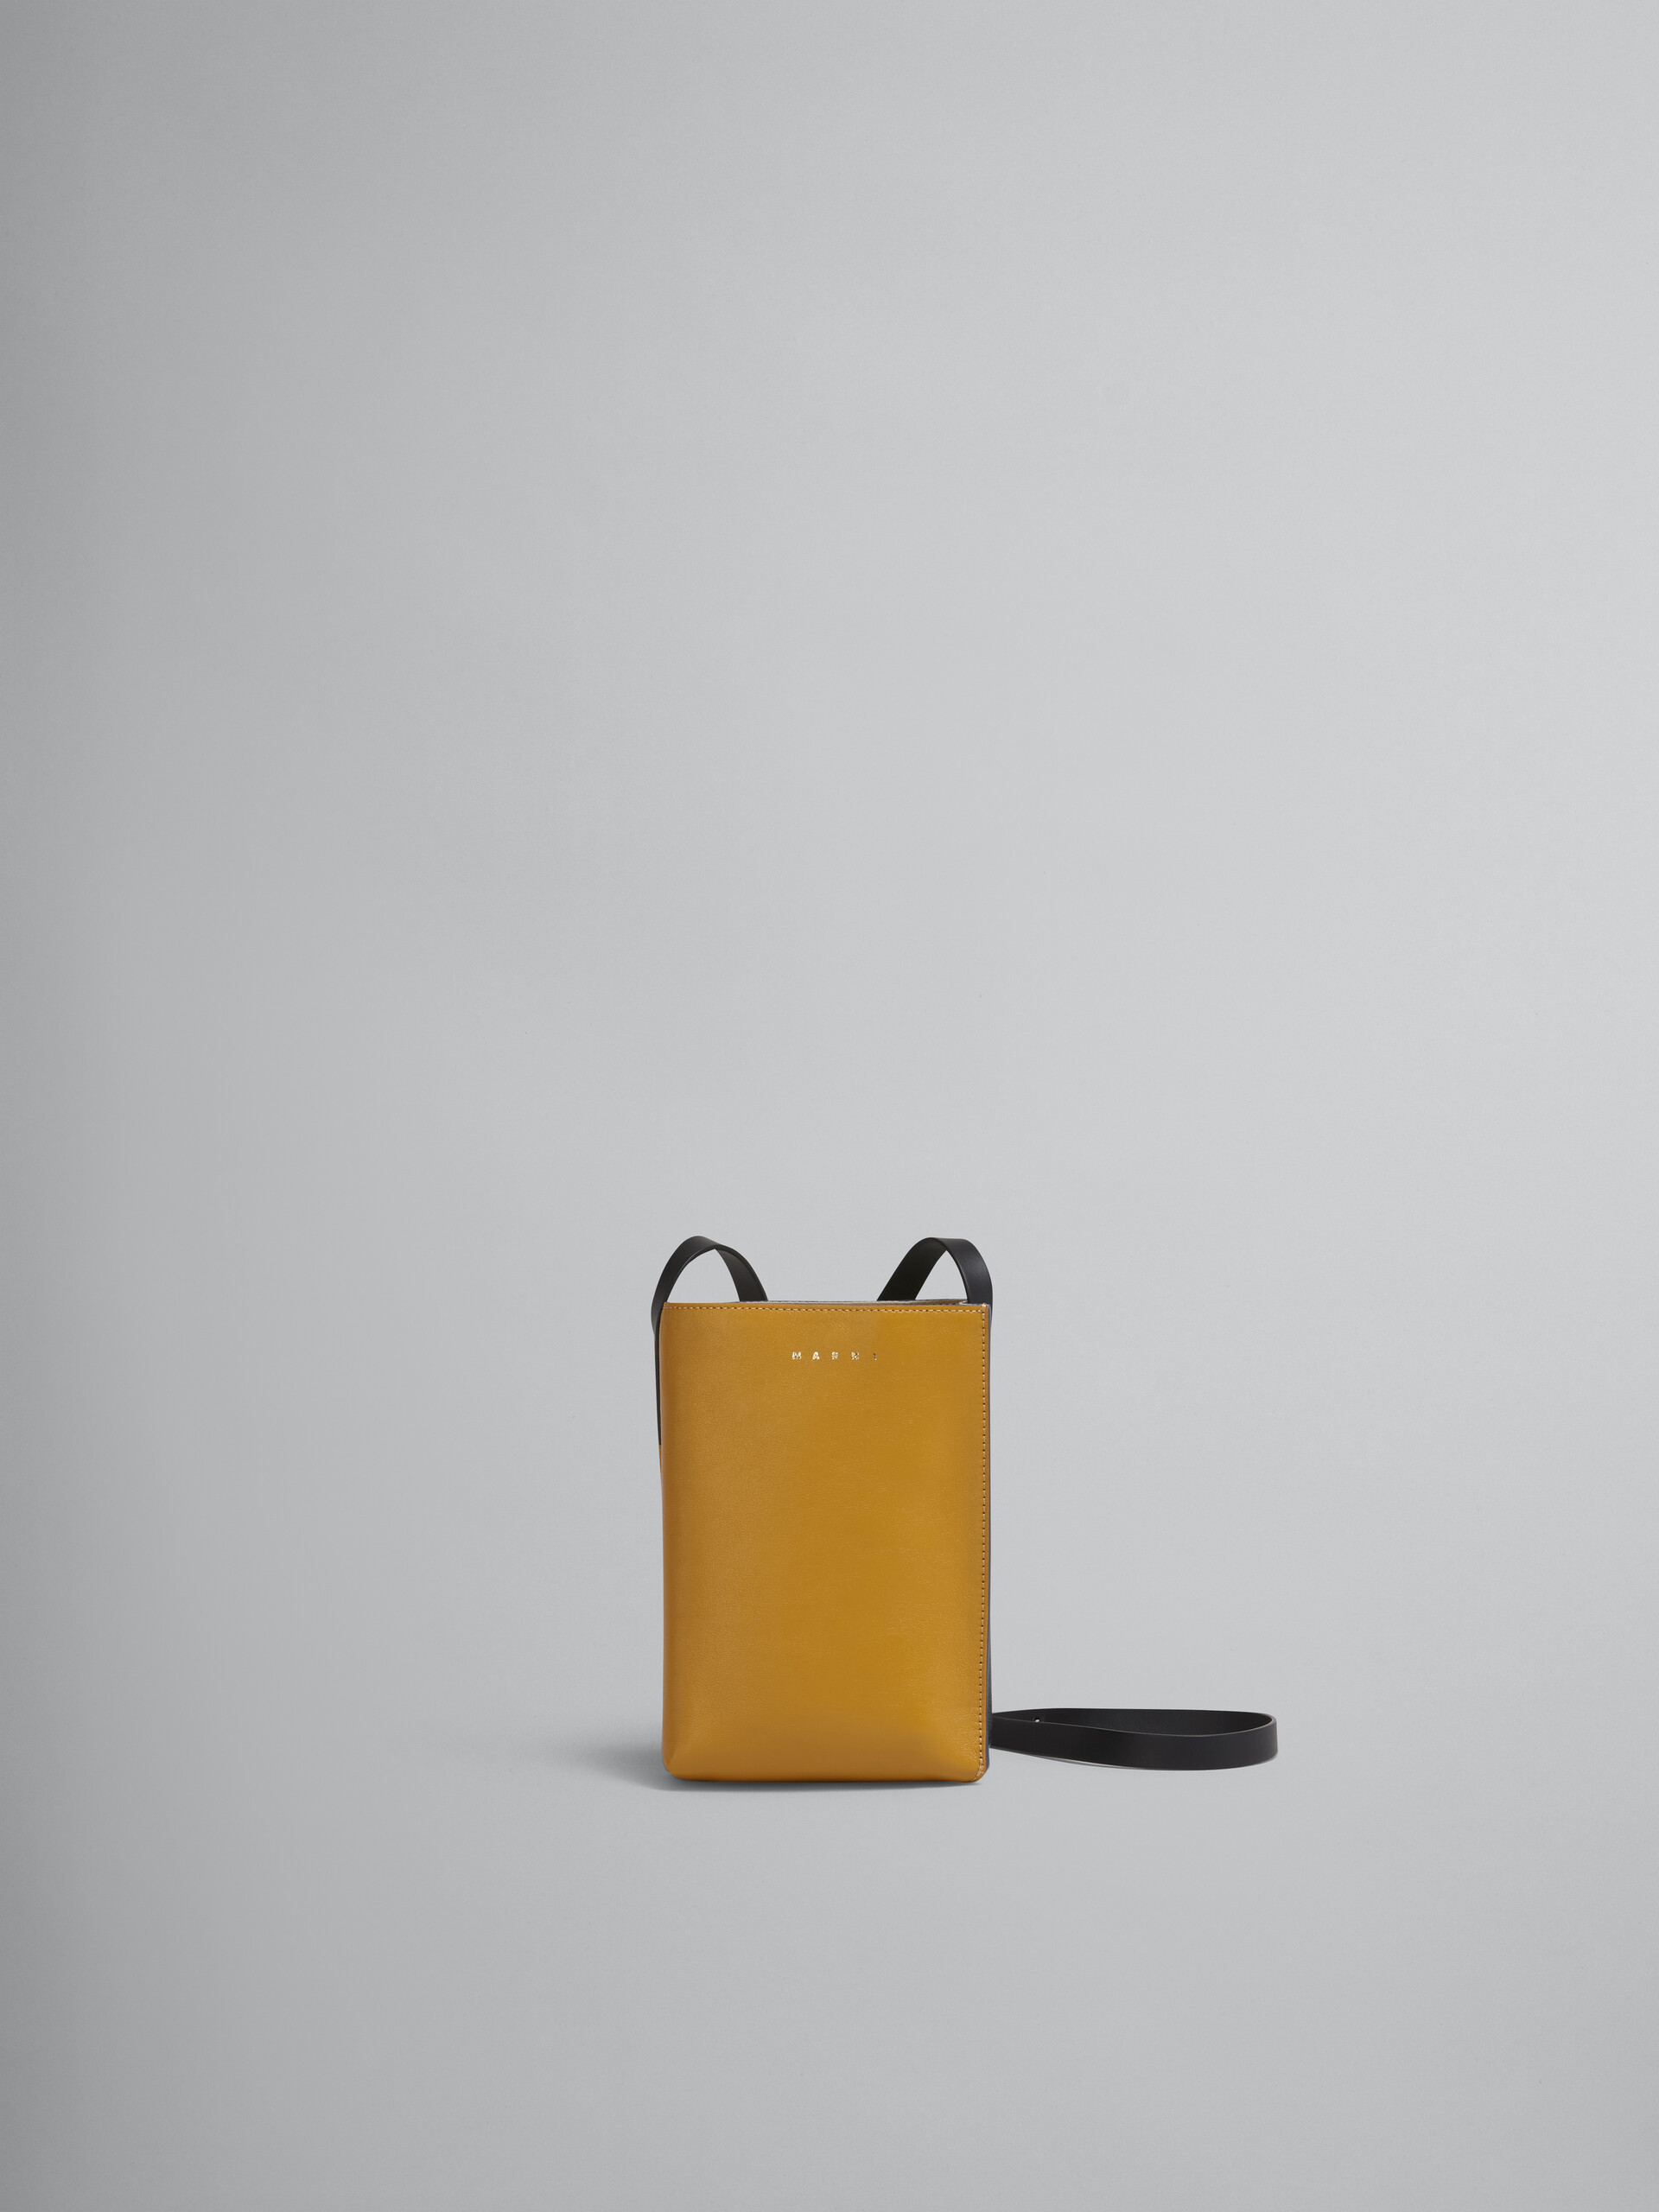 Sac MUSEO SOFT en cuir de veau tanné jaune et vert - Sacs portés épaule - Image 1